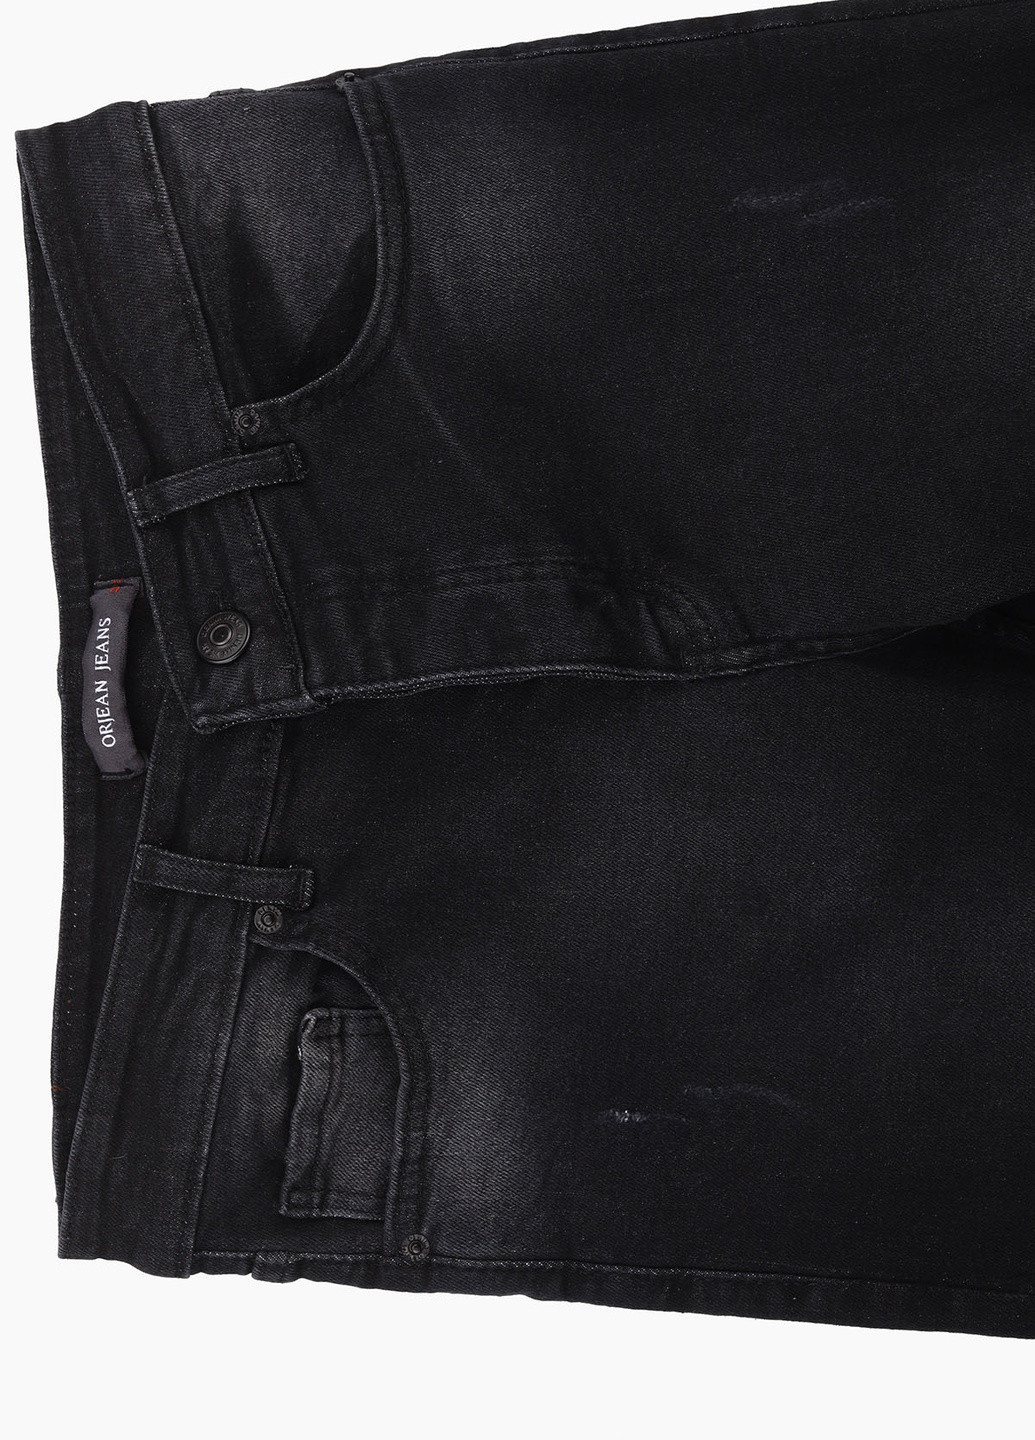 Темно-серые демисезонные джинсы slim fit Mario Cavalli